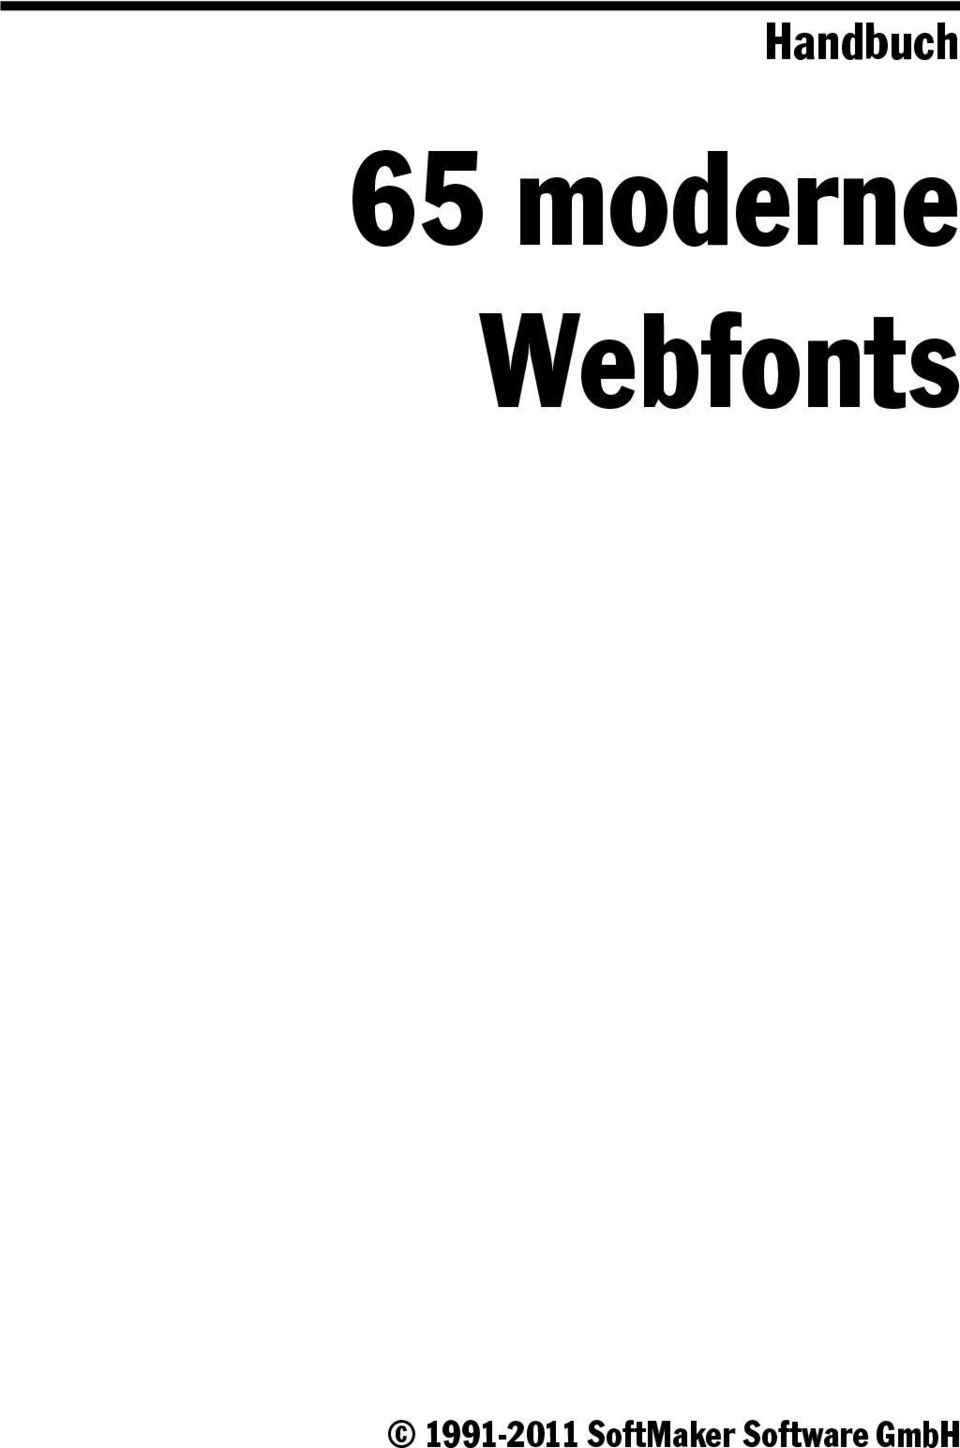 Webfonts